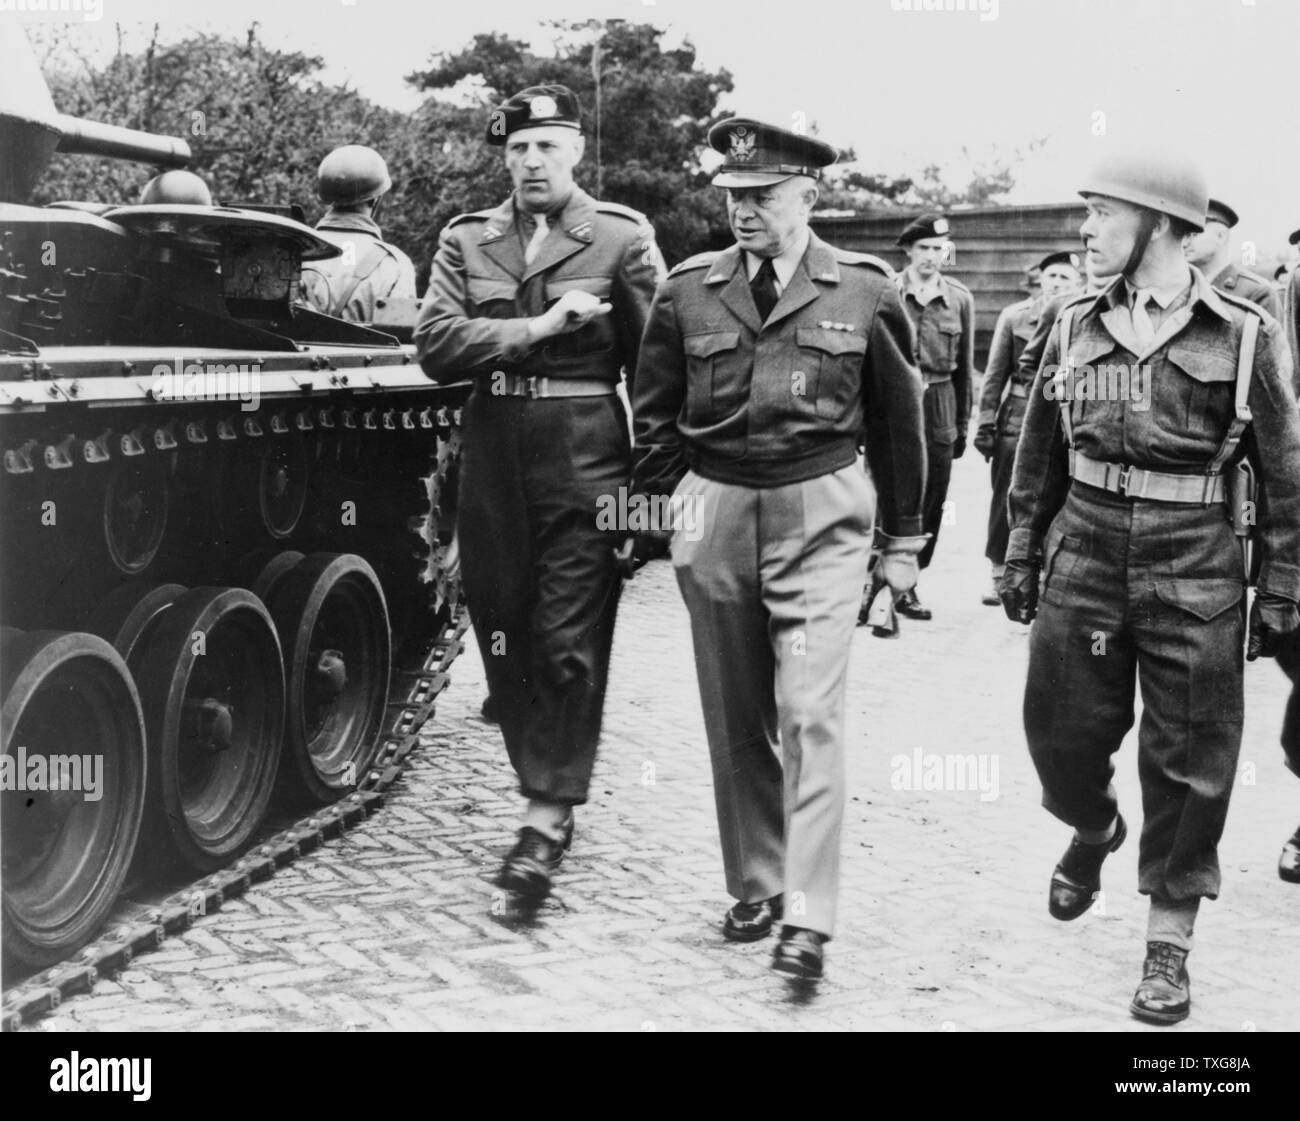 Weltkrieg - 1945: US-General Dwight Eisenhower Truppen inspizieren. Der Armee, wurde er 34. Präsident der Vereinigten Staaten (1953-1961) Stockfoto